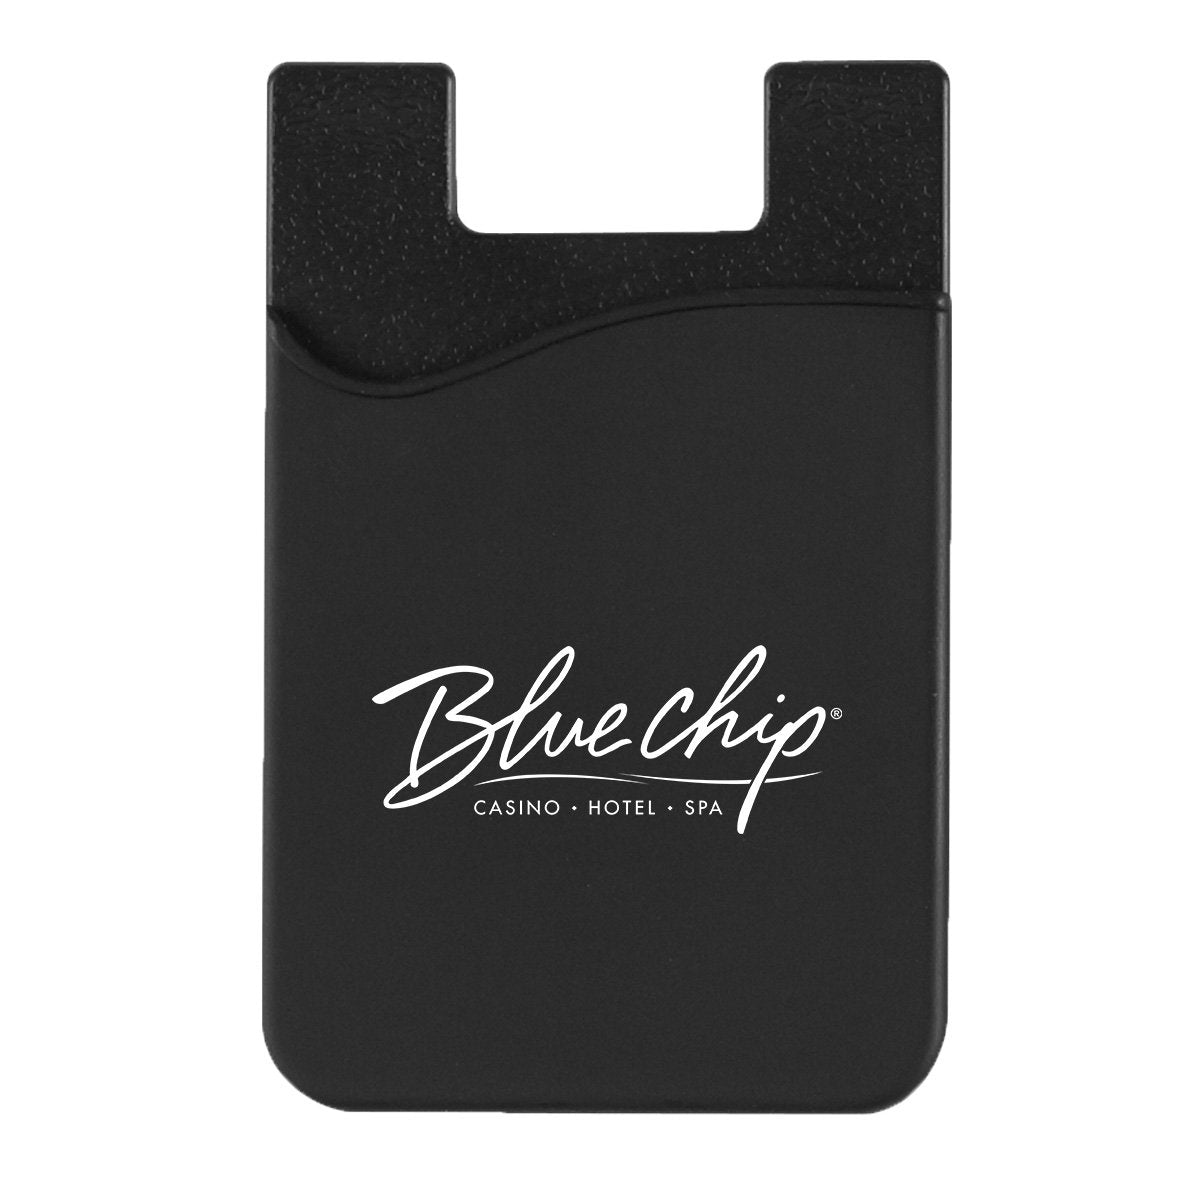 Silicone Phone Wallet Black Single Color 